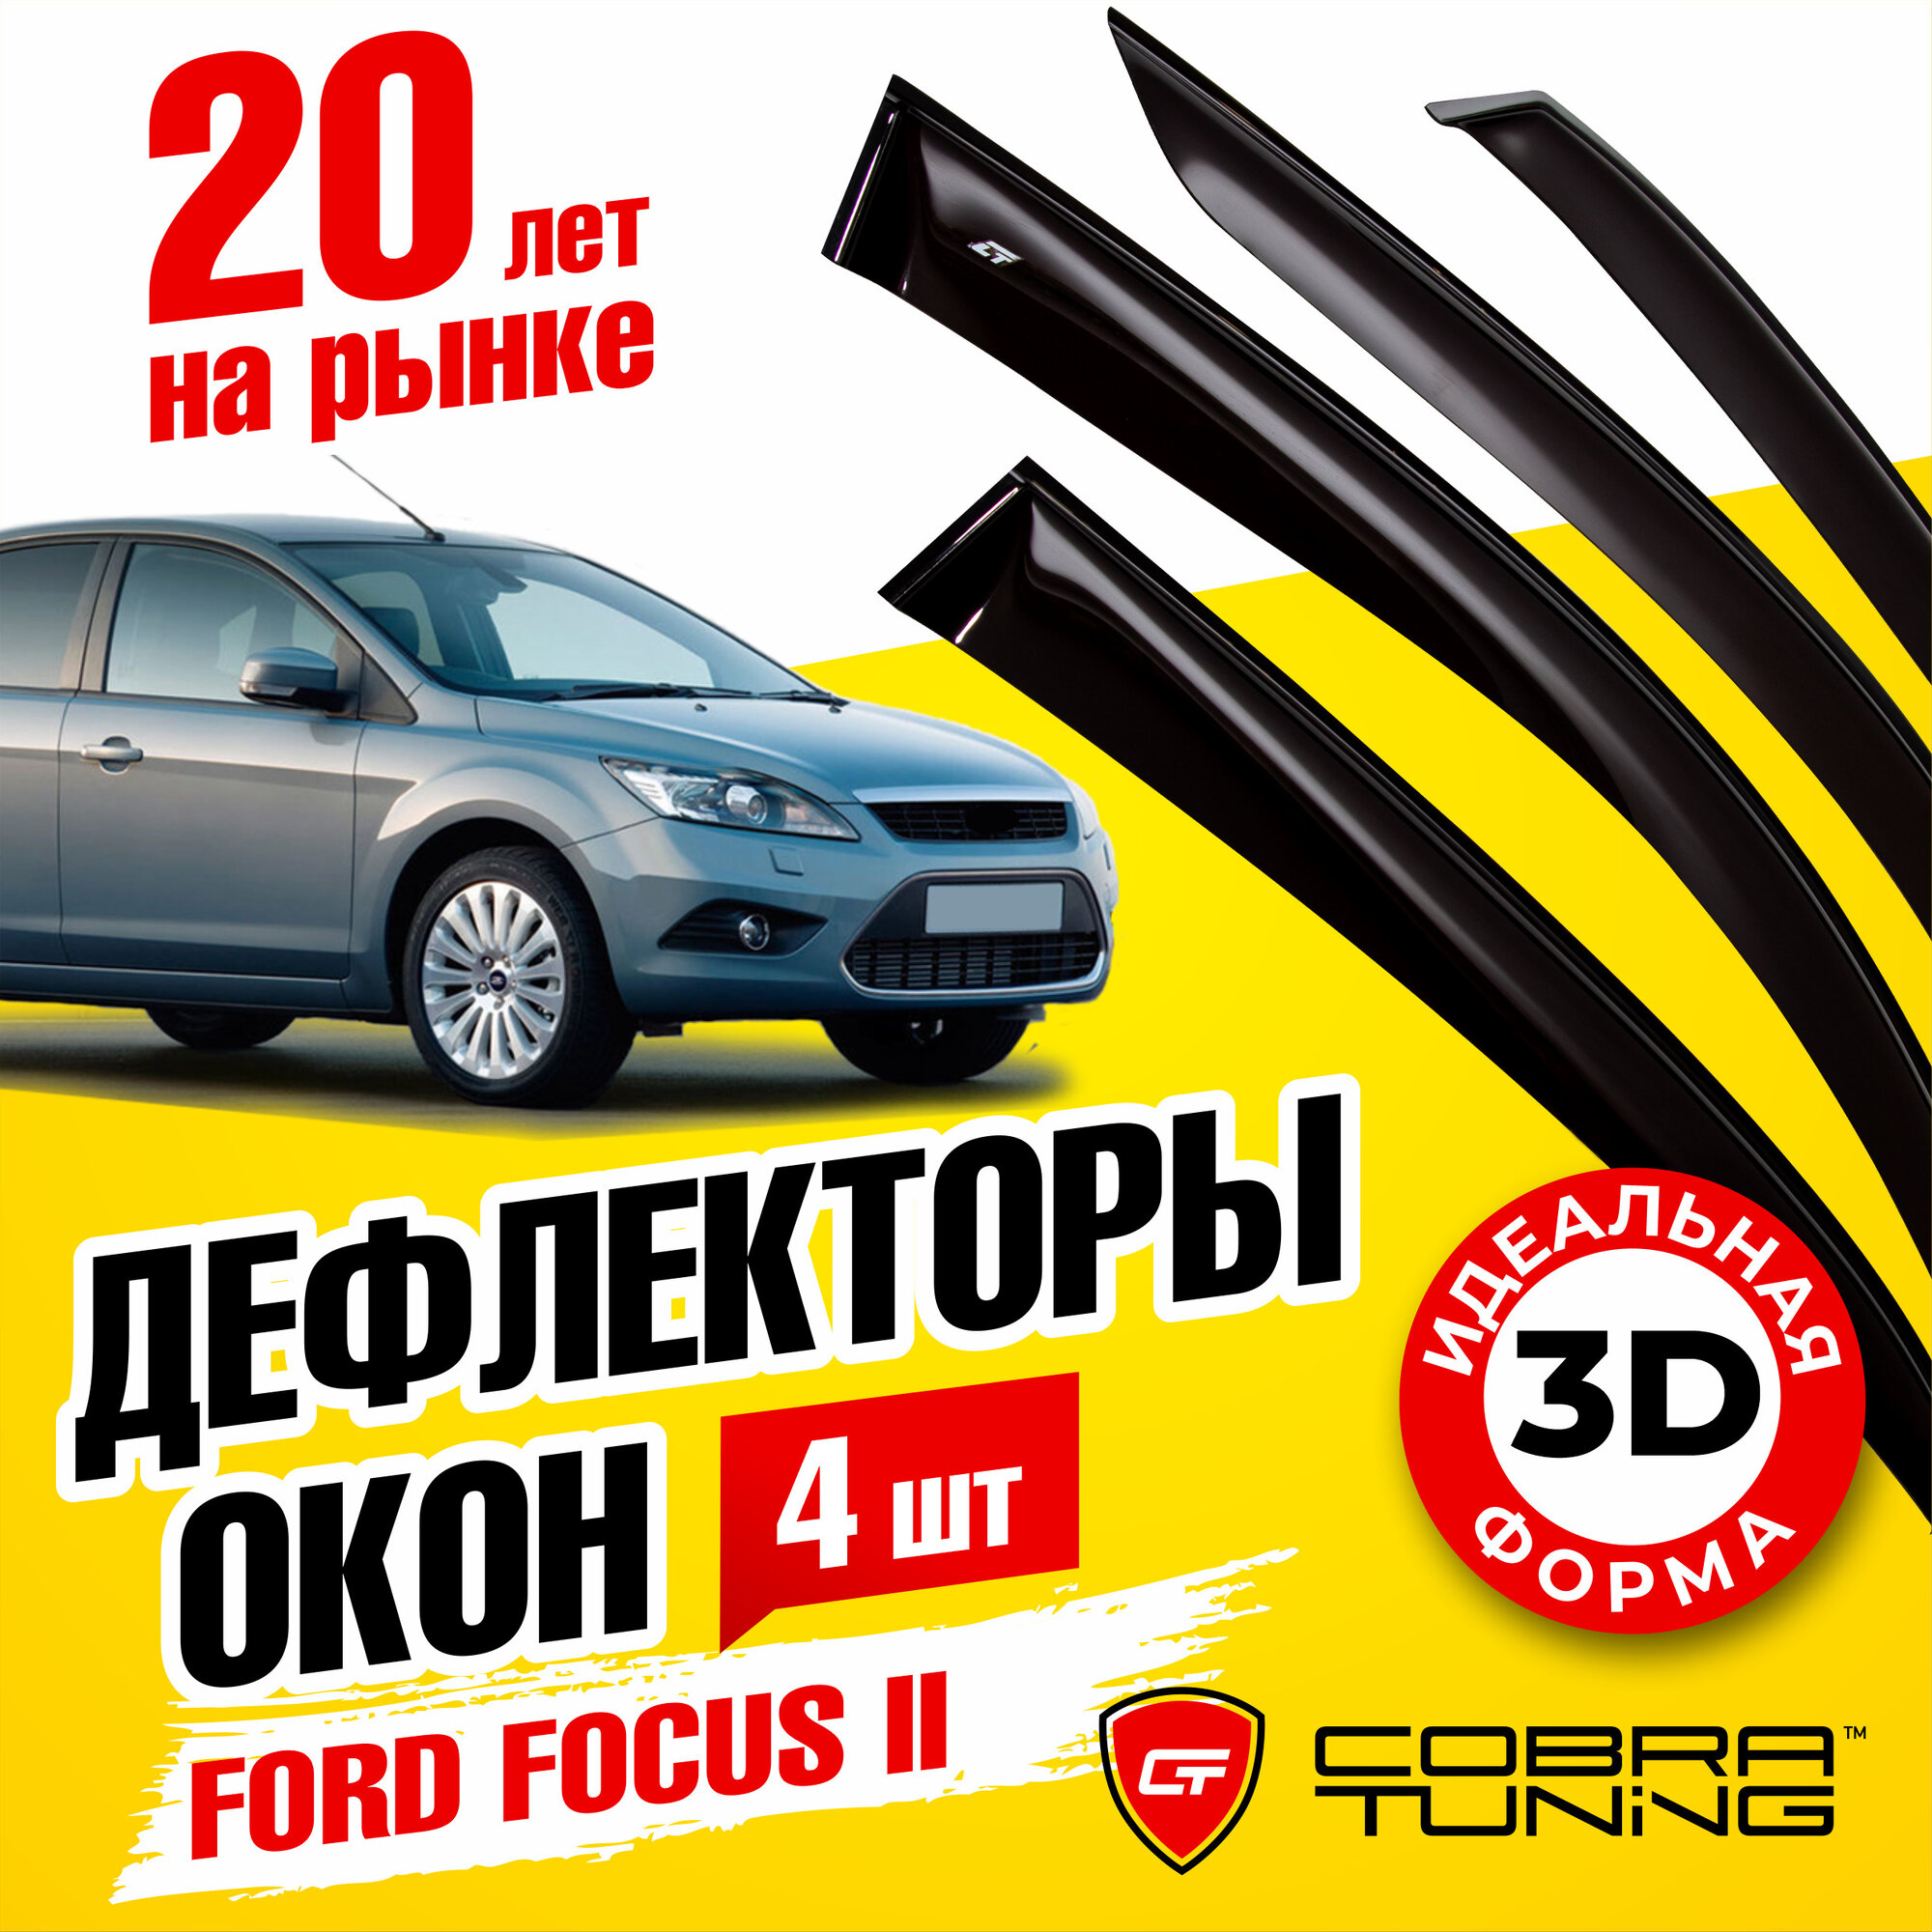 Дефлекторы боковых окон для Ford Focus II (Форд Фокус 2) седан, хэтчбек 2004-2011, ветровики на двери автомобиля, Cobra Tuning